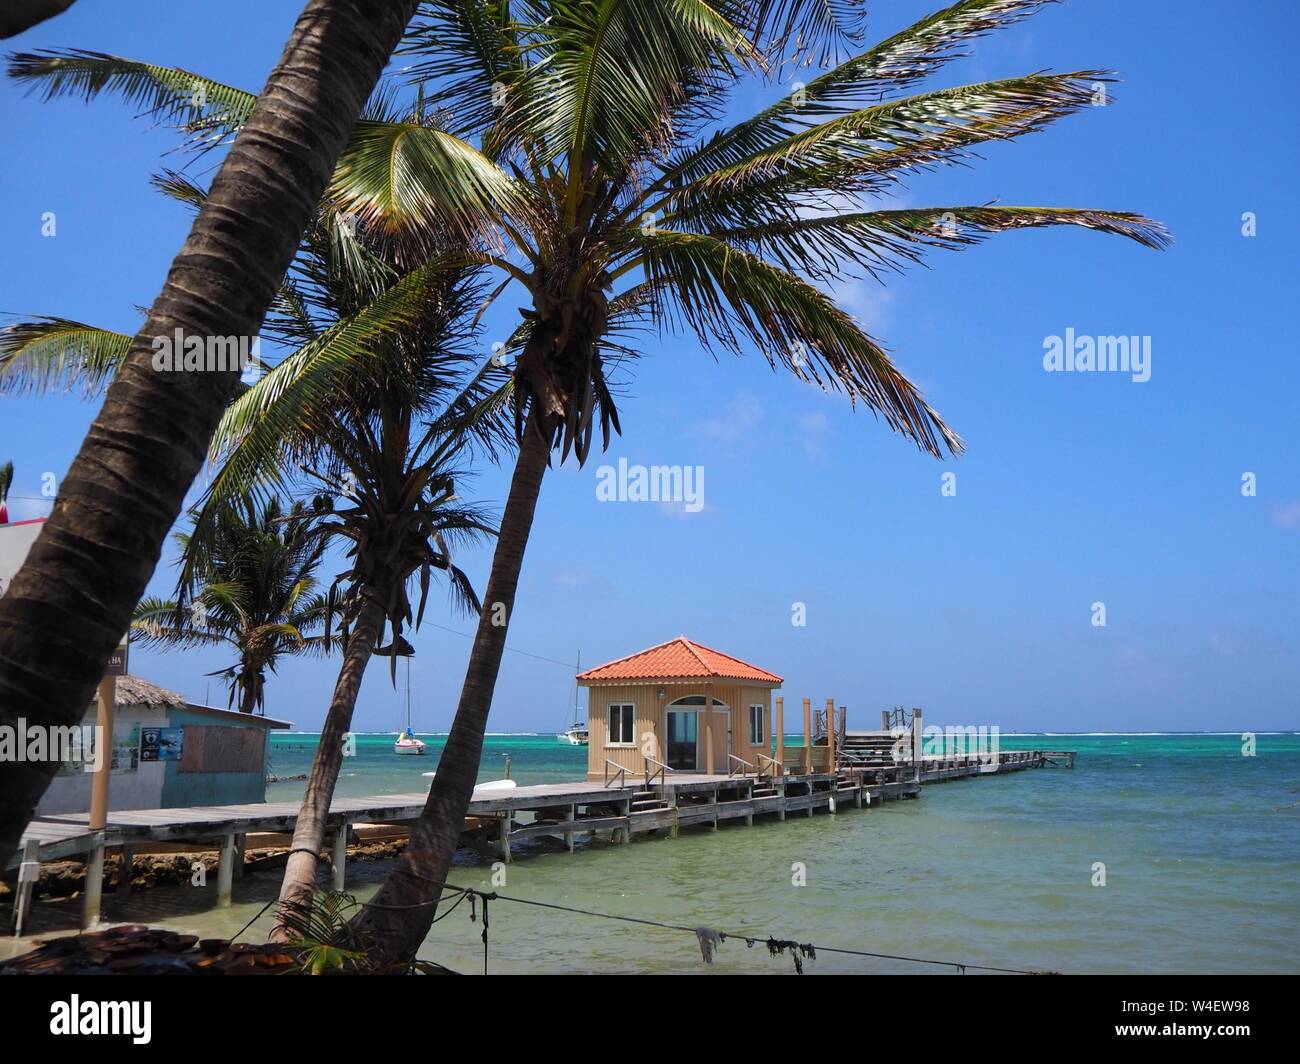 Der Strand auf Ambergris Caye, Beliaze, tropisches Paradies Insel in der Karibik. Stockfoto